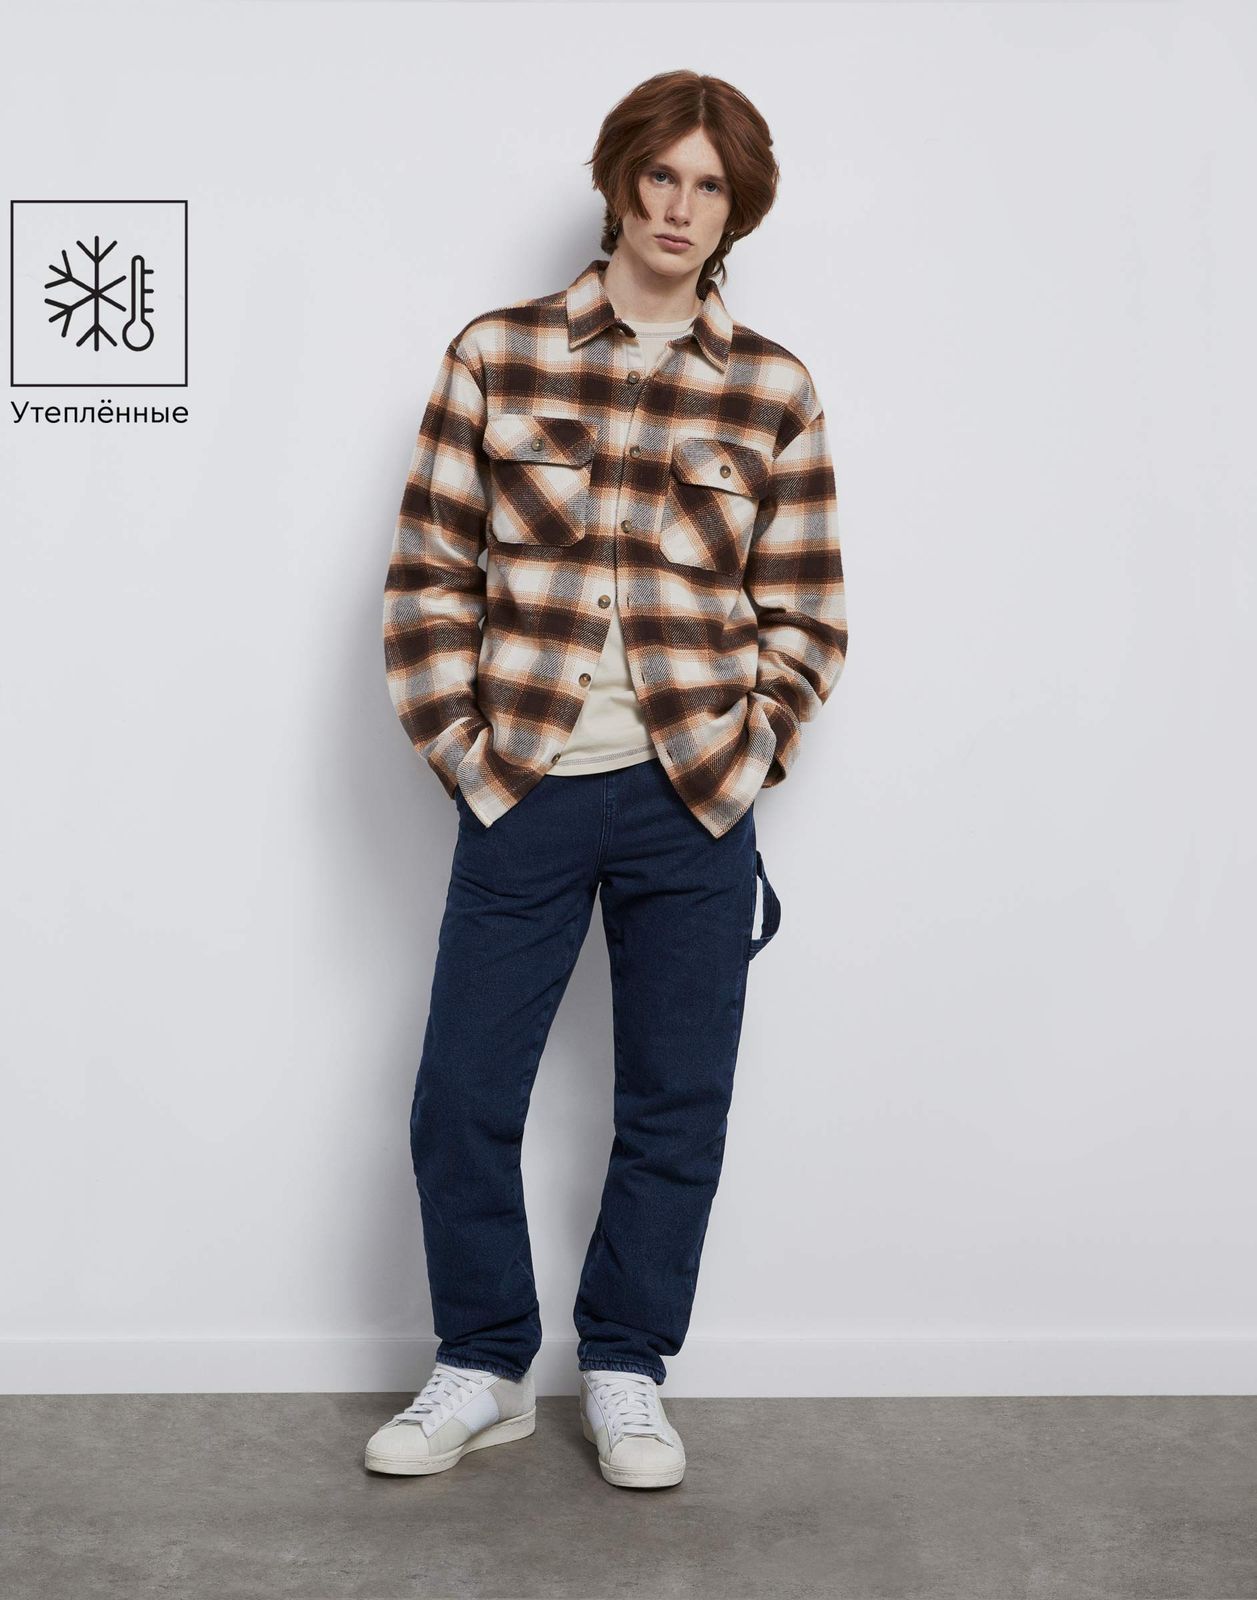 Утеплённые джинсы Straight с хлястиком  BWB001830 медиум-дарк/айс 8-9л/134 для мальчика